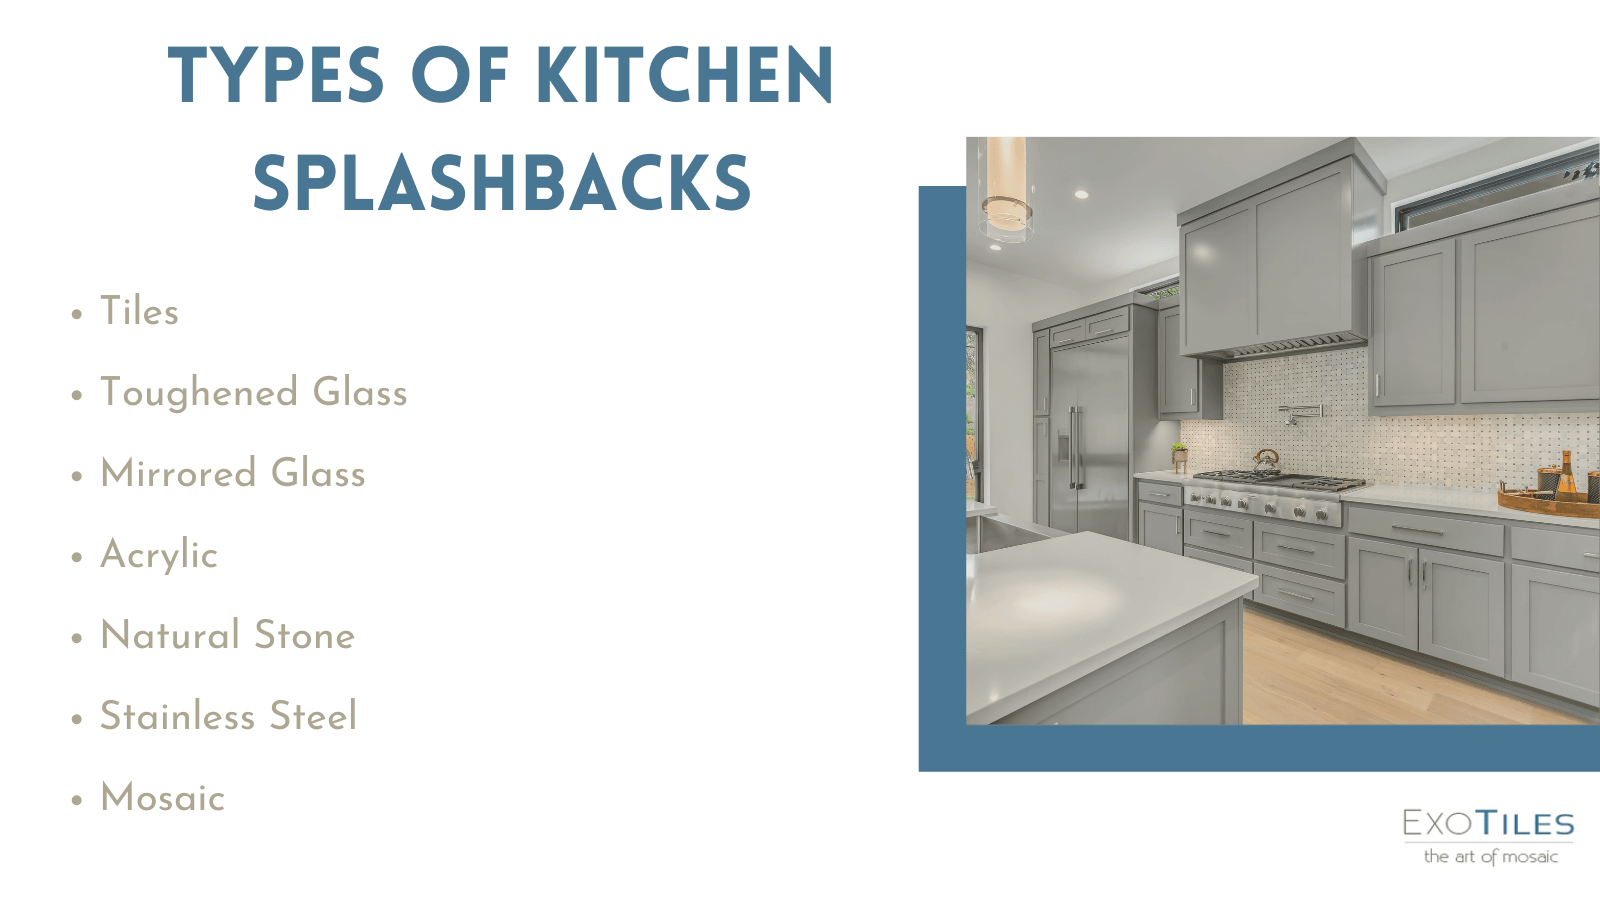 Types of kitchen splashbacks infographic